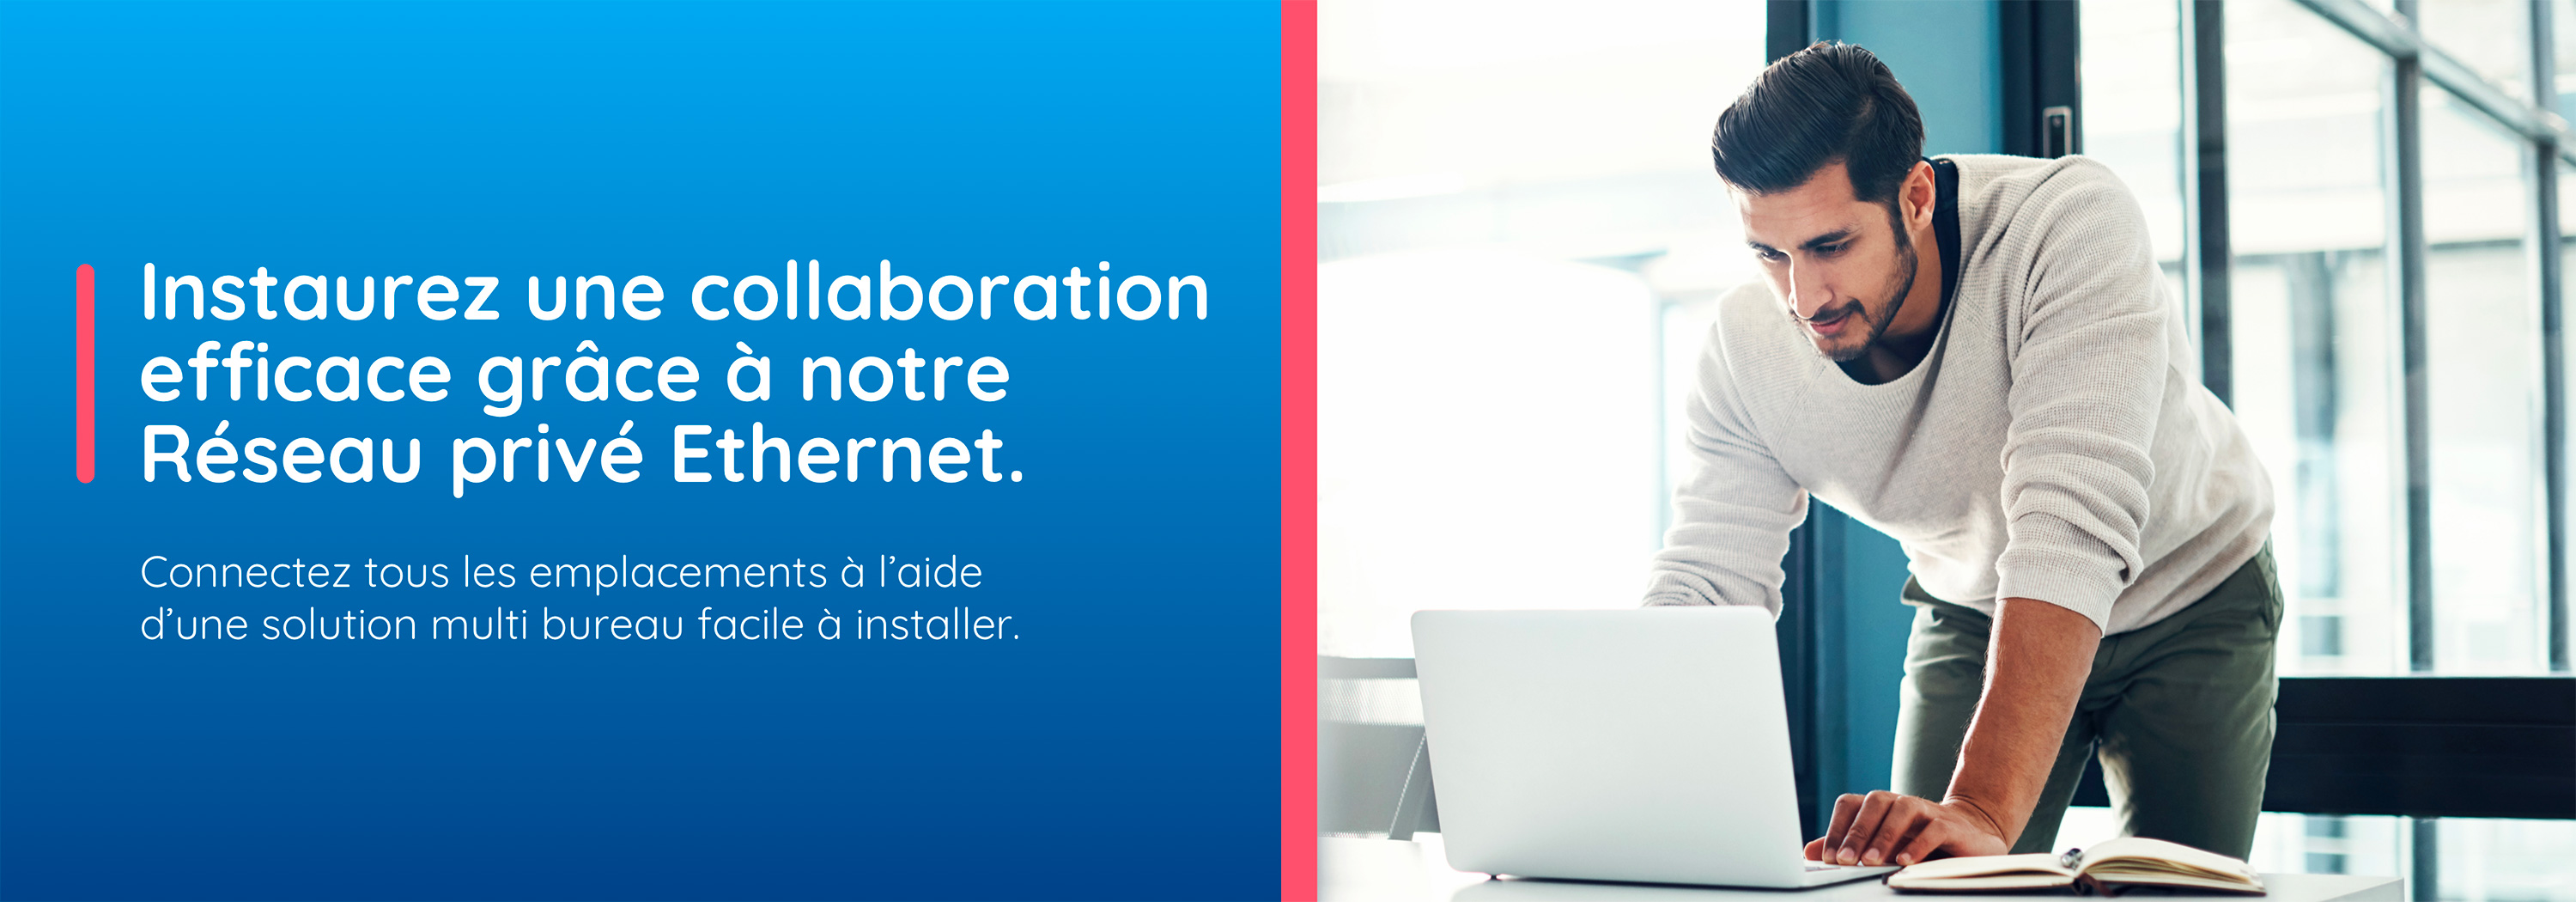 Instaurez une collaboration efficace grâce à notre Réseau privé Ethernet. Connectez tous les emplacements à l’aide d’une solution multi bureau facile à installer.